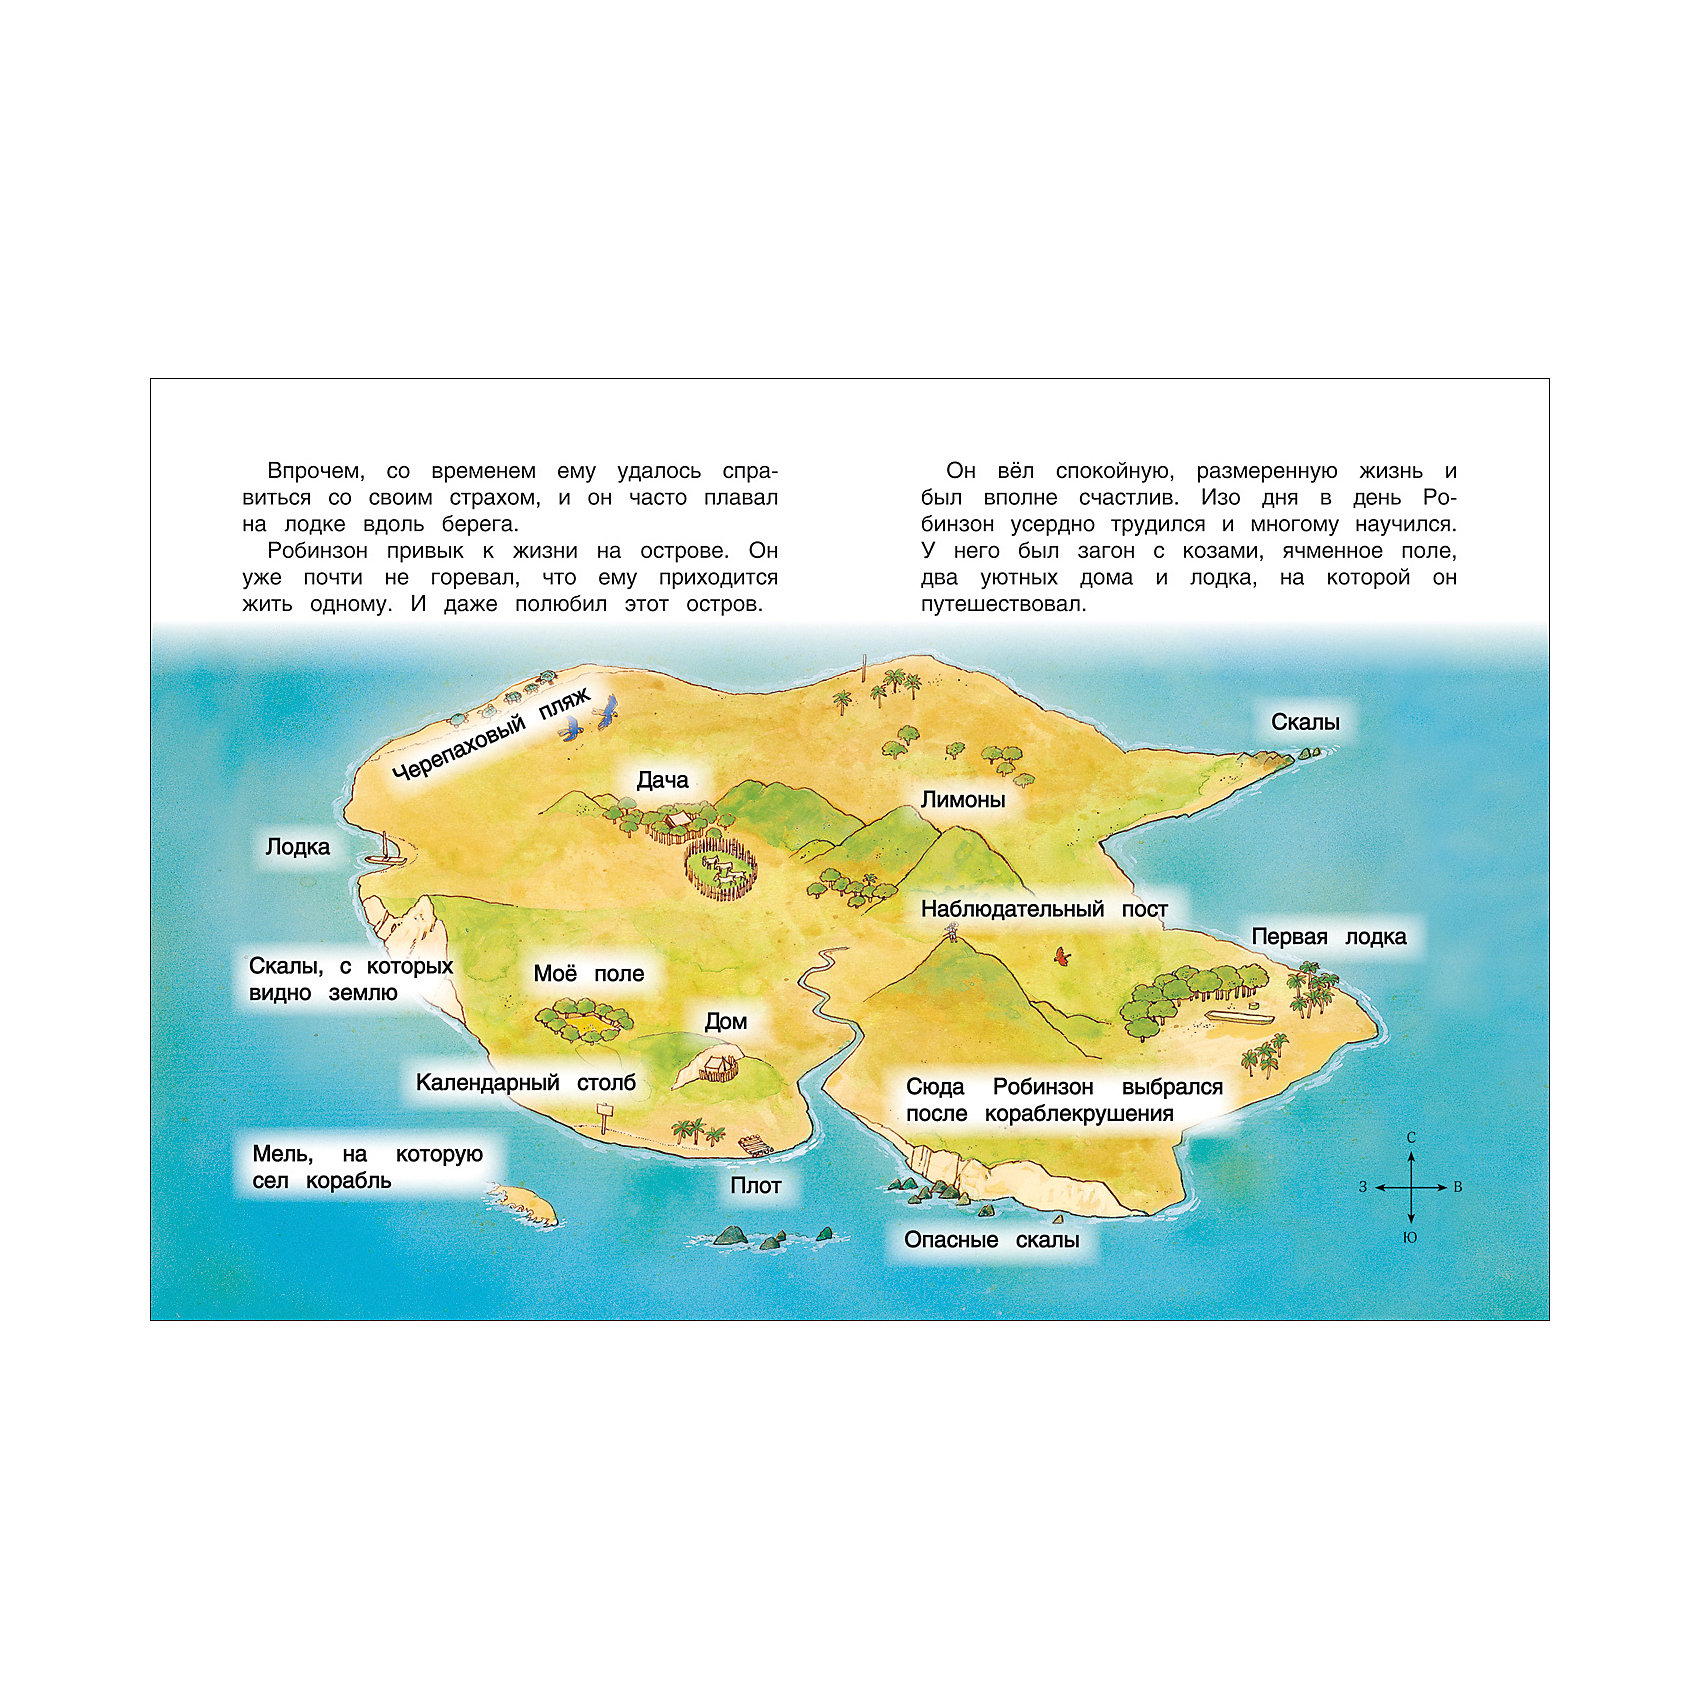 Карта робинзона крузо. Остров на котором жил Робинзон Крузо на карте. Карта острова Робинзона Крузо по книге. Описание острова Робинзона Крузо по книге Дефо. Карта острова Робинзона Крузо рисунок.